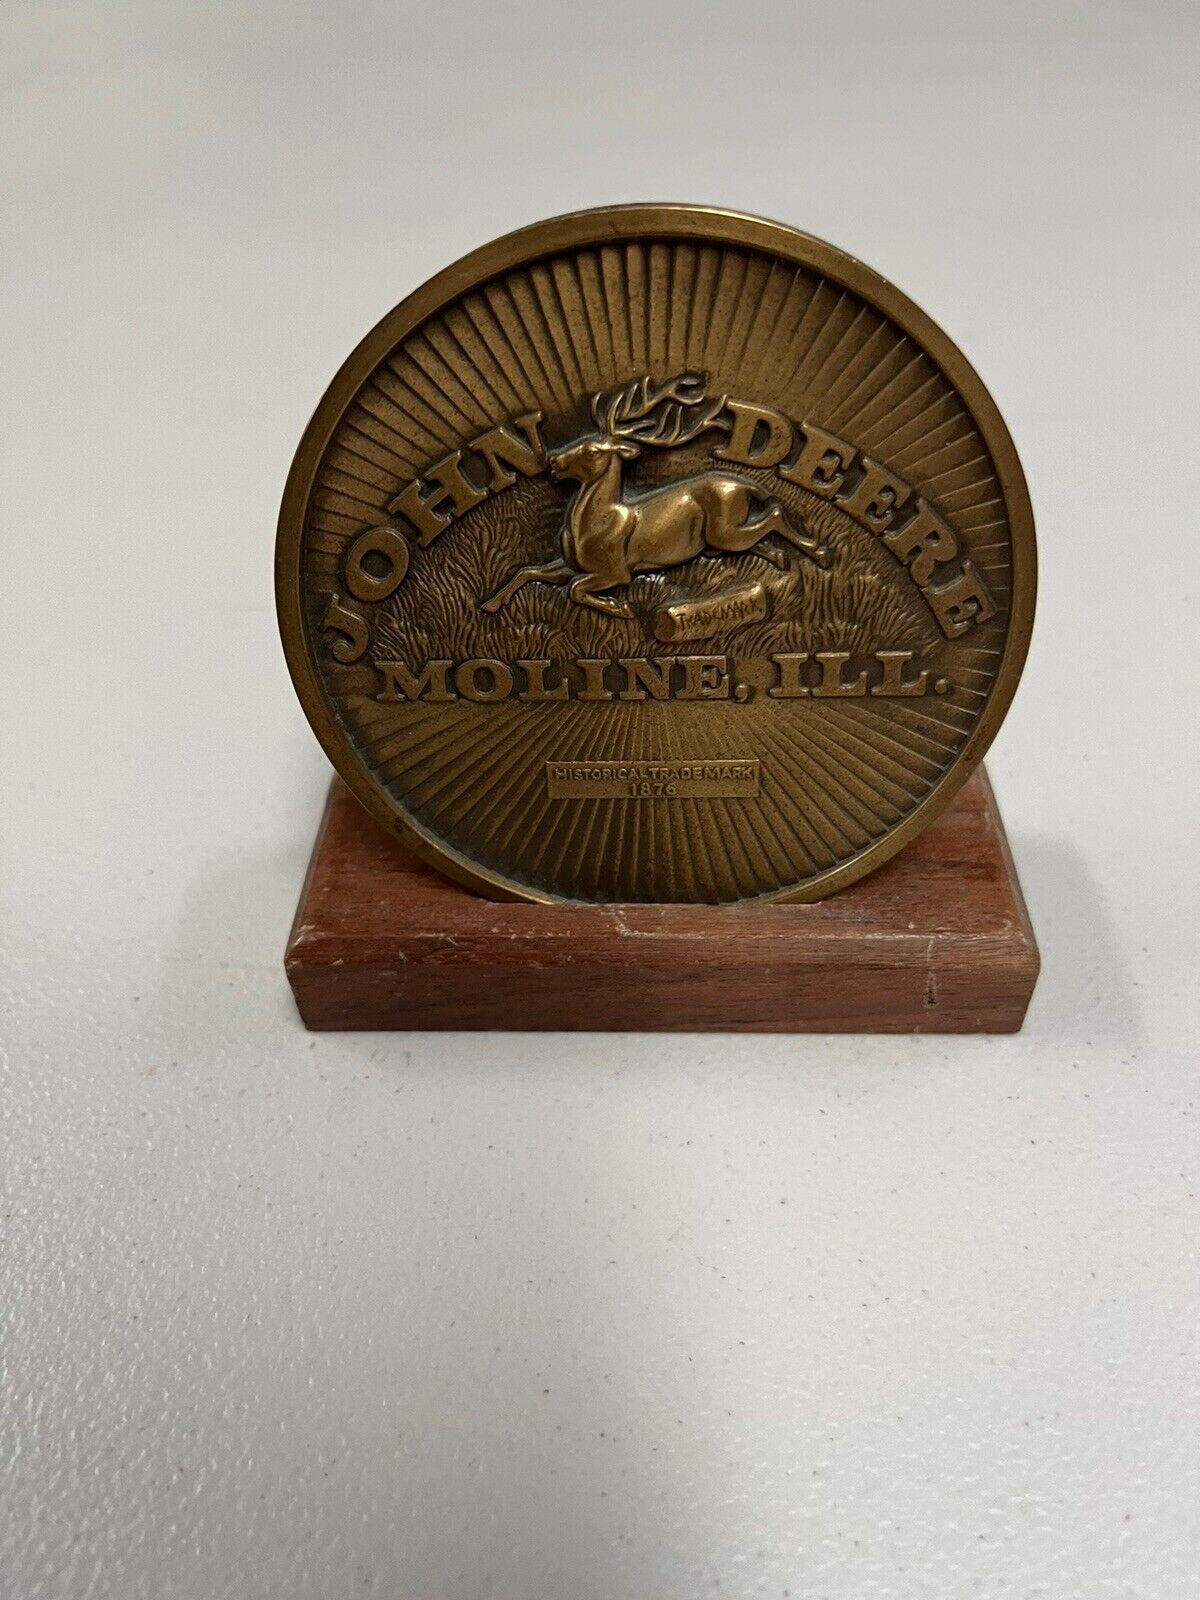 Used 1984 John Deere Calendar Medallion